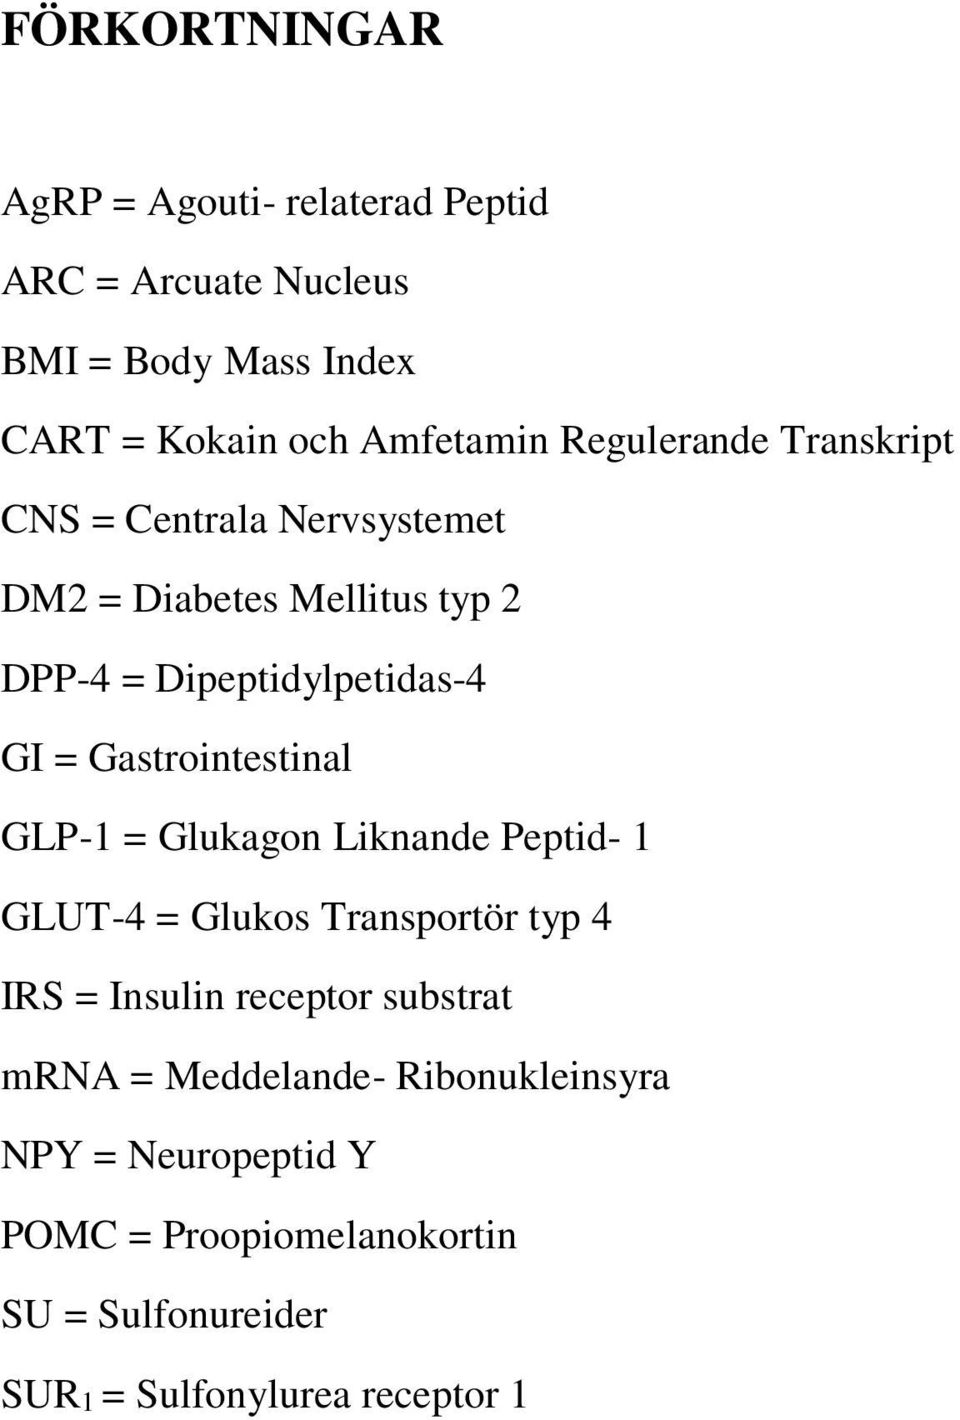 Gastrointestinal GLP-1 = Glukagon Liknande Peptid- 1 GLUT-4 = Glukos Transportör typ 4 IRS = Insulin receptor substrat